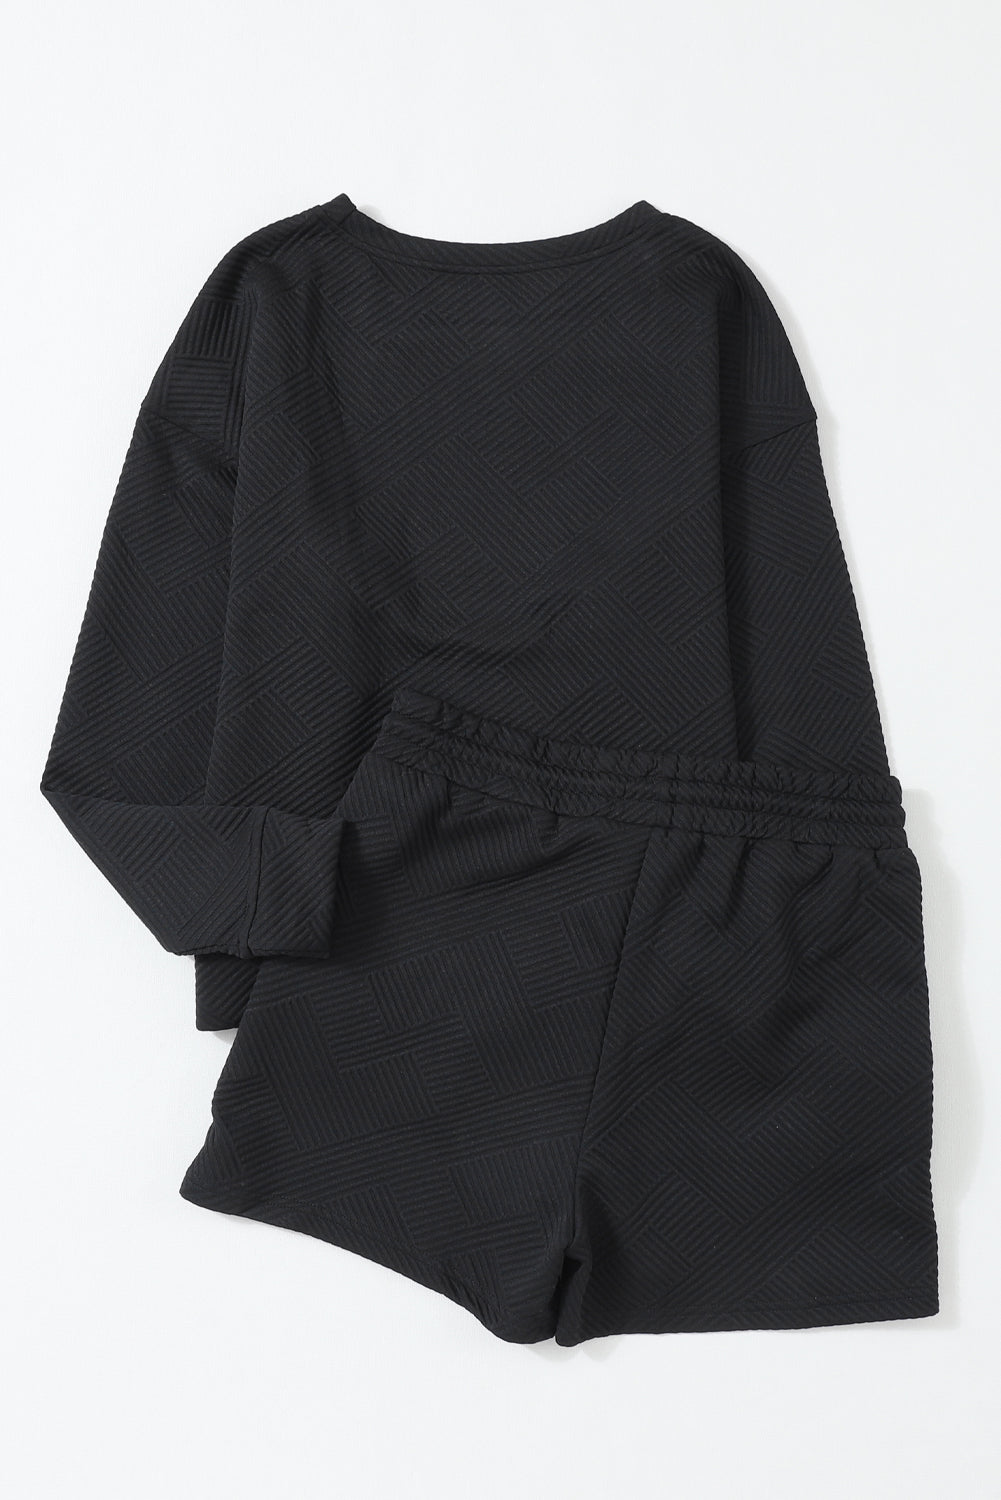 Crna teksturirana majica dugih rukava i kratki set s uzicom